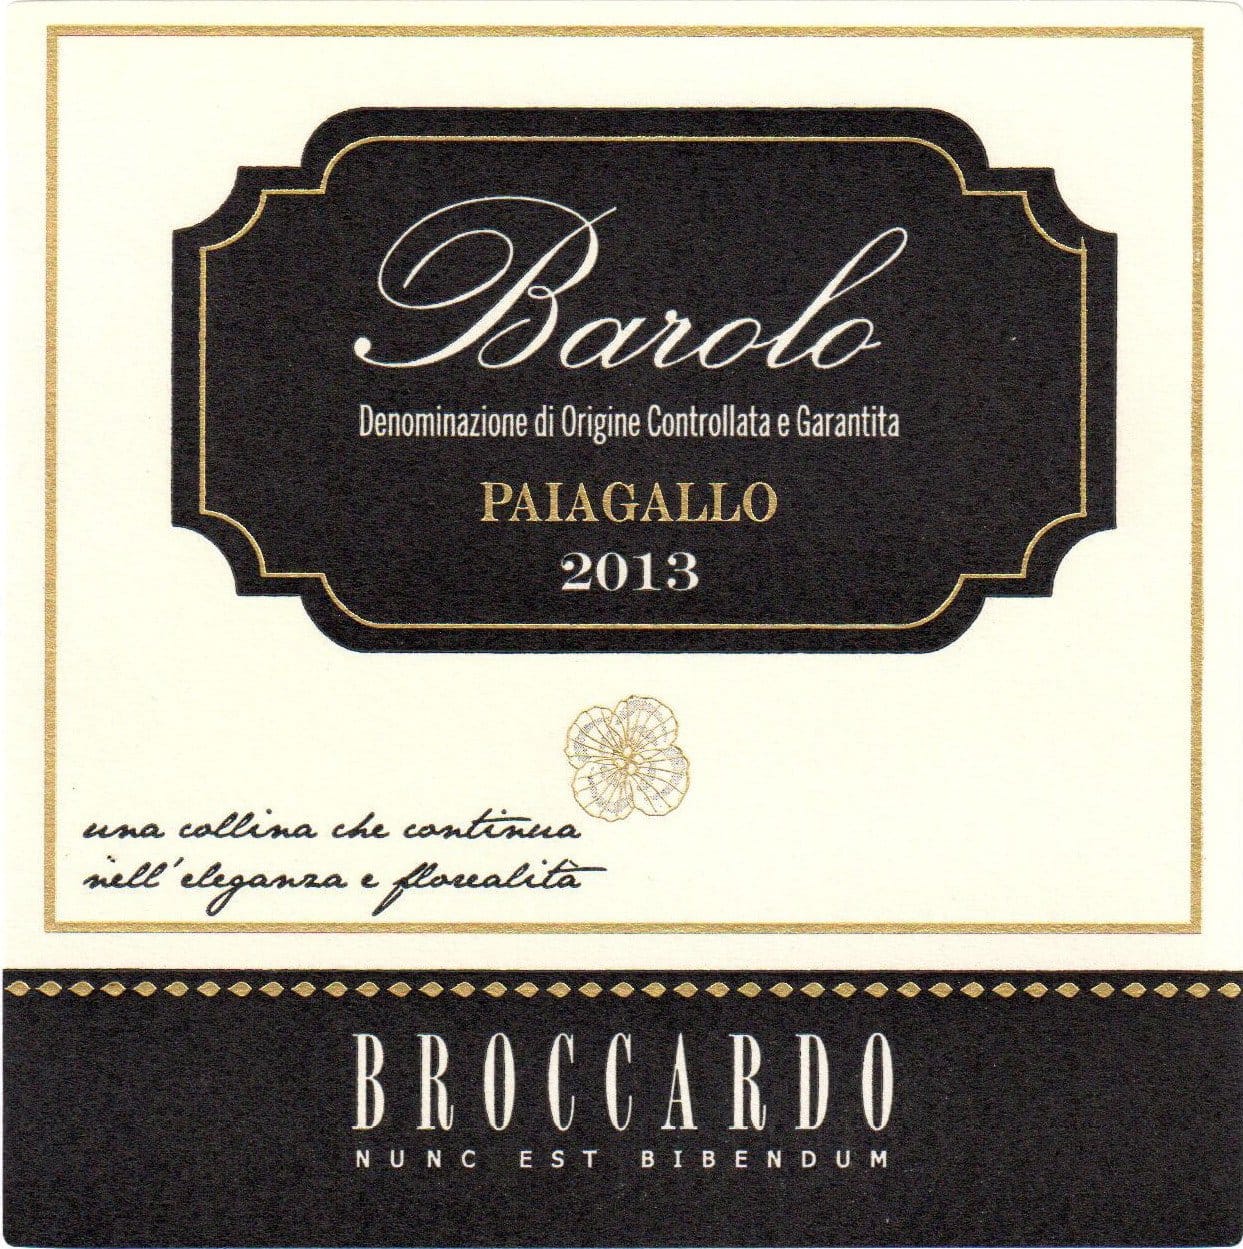 Broccardo Barolo Paiagallo 2013